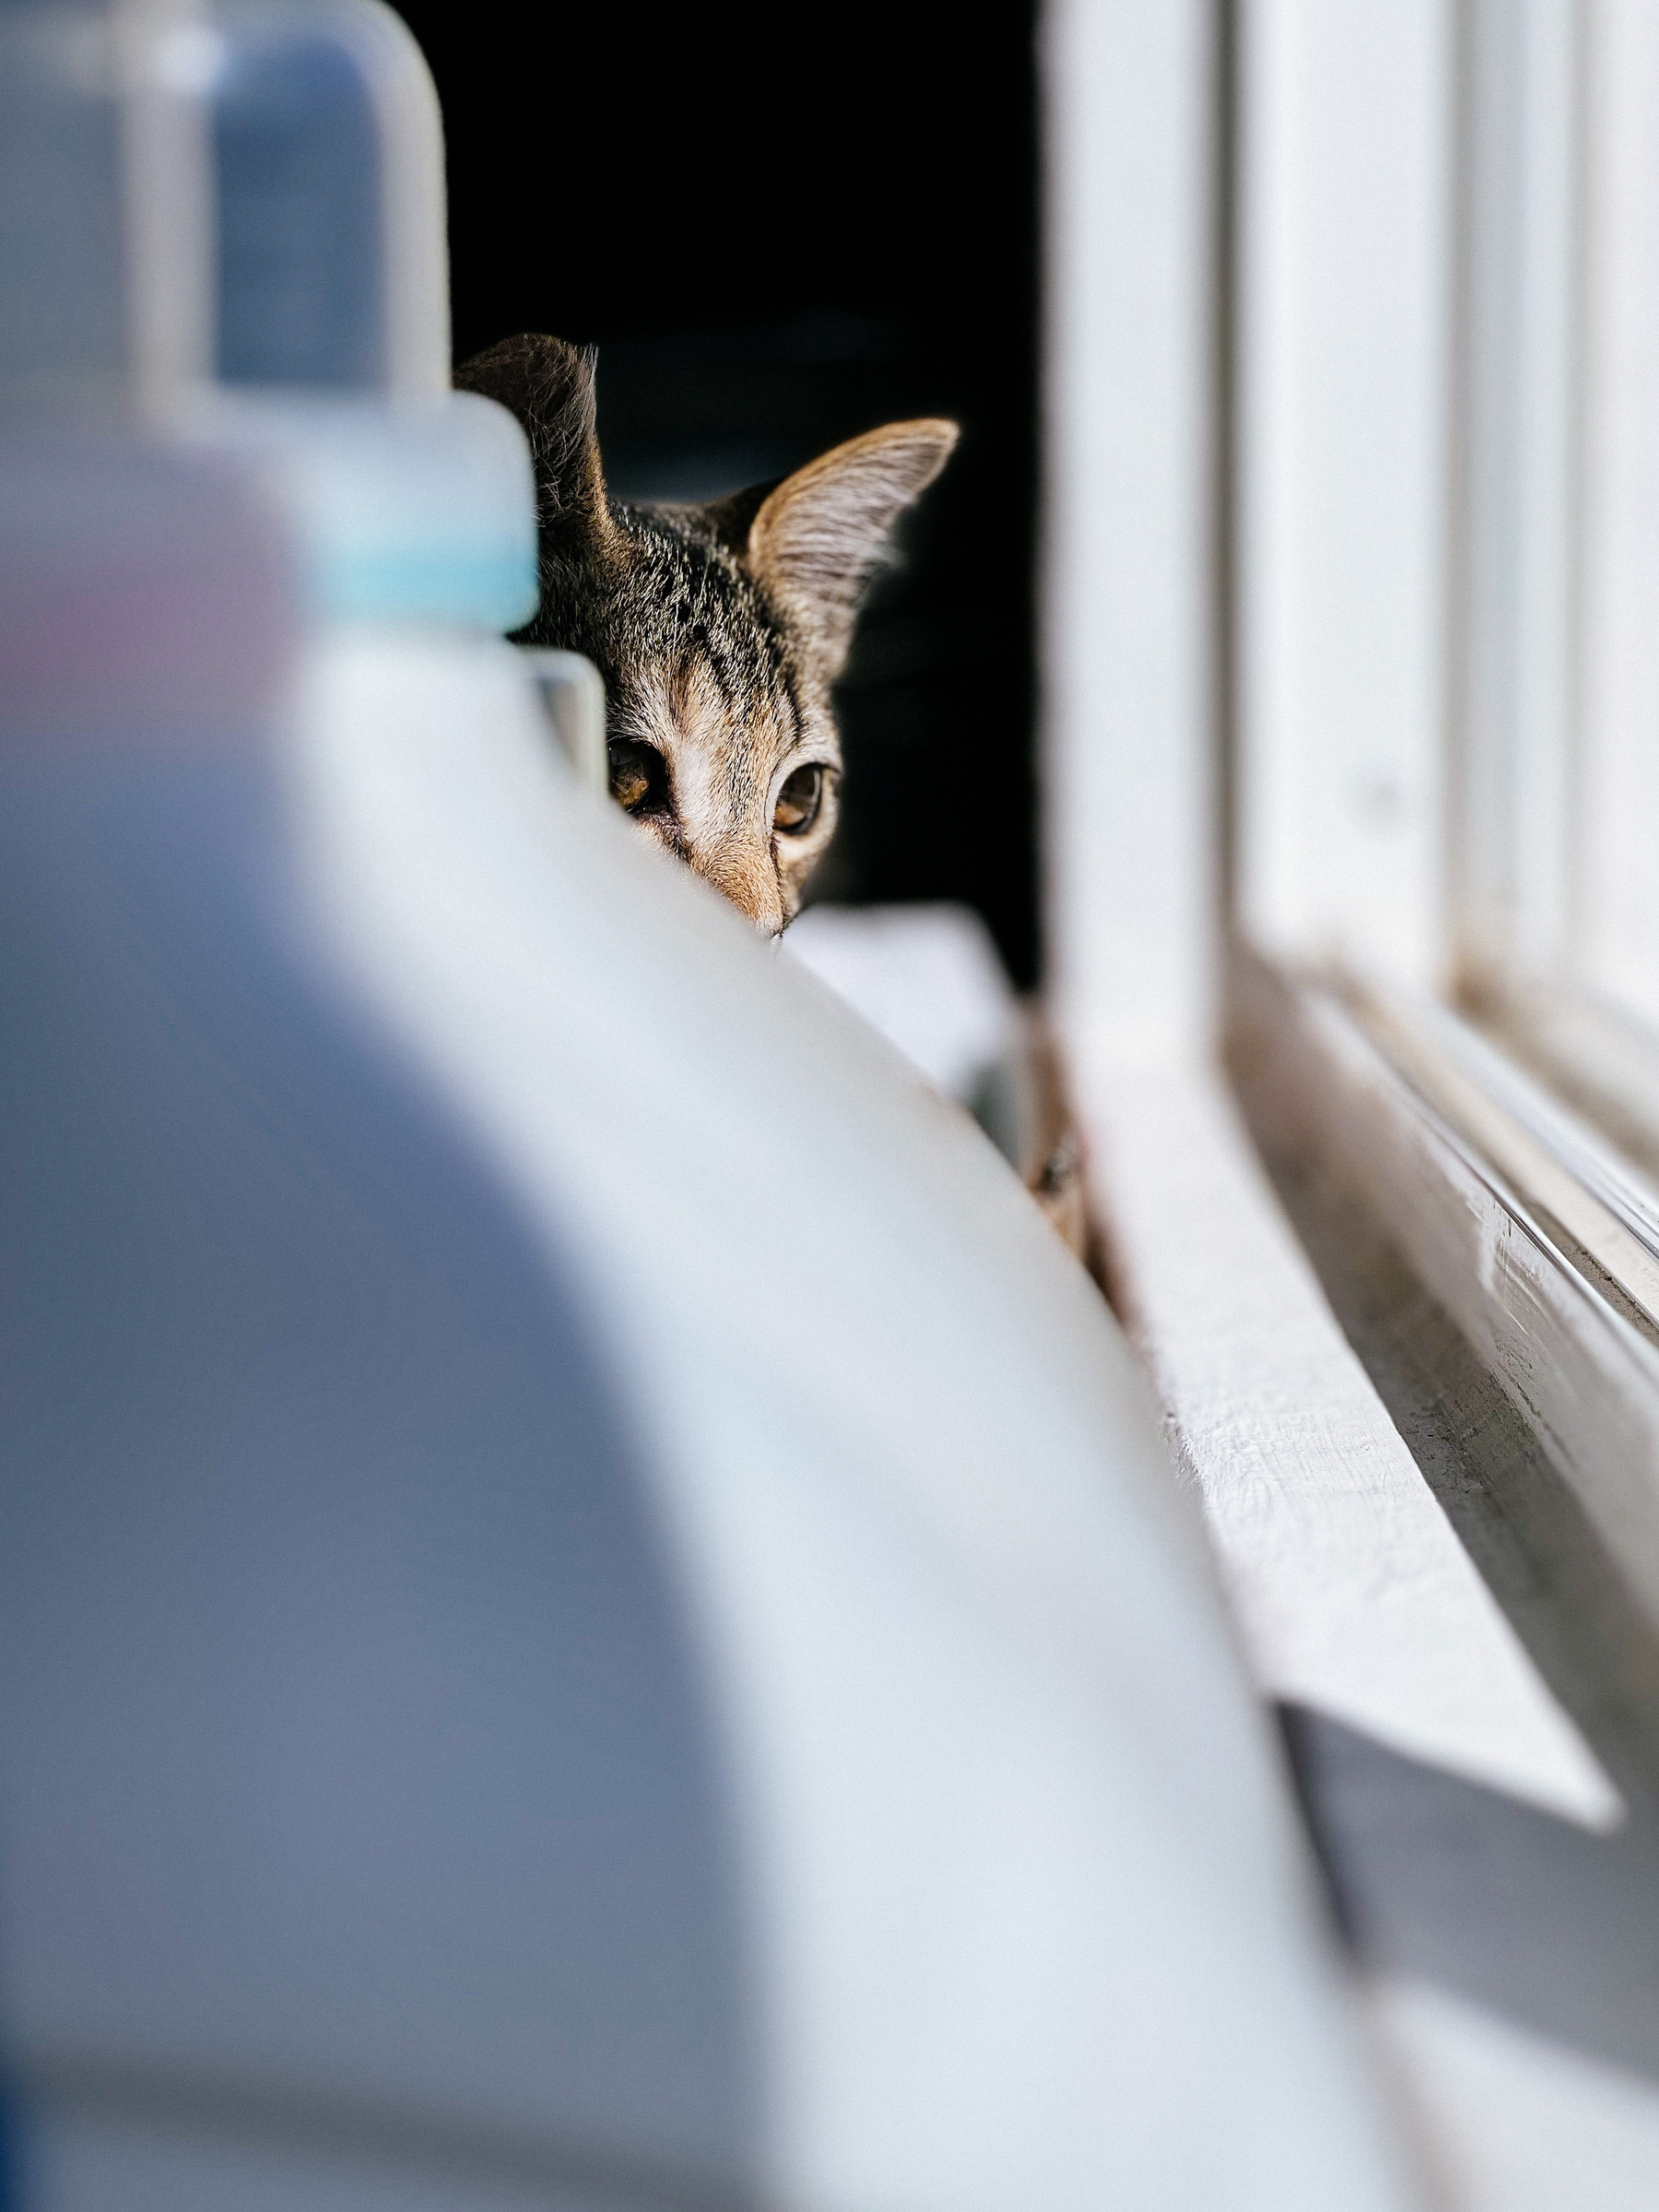 a kitten peeking from behind detergent bottles